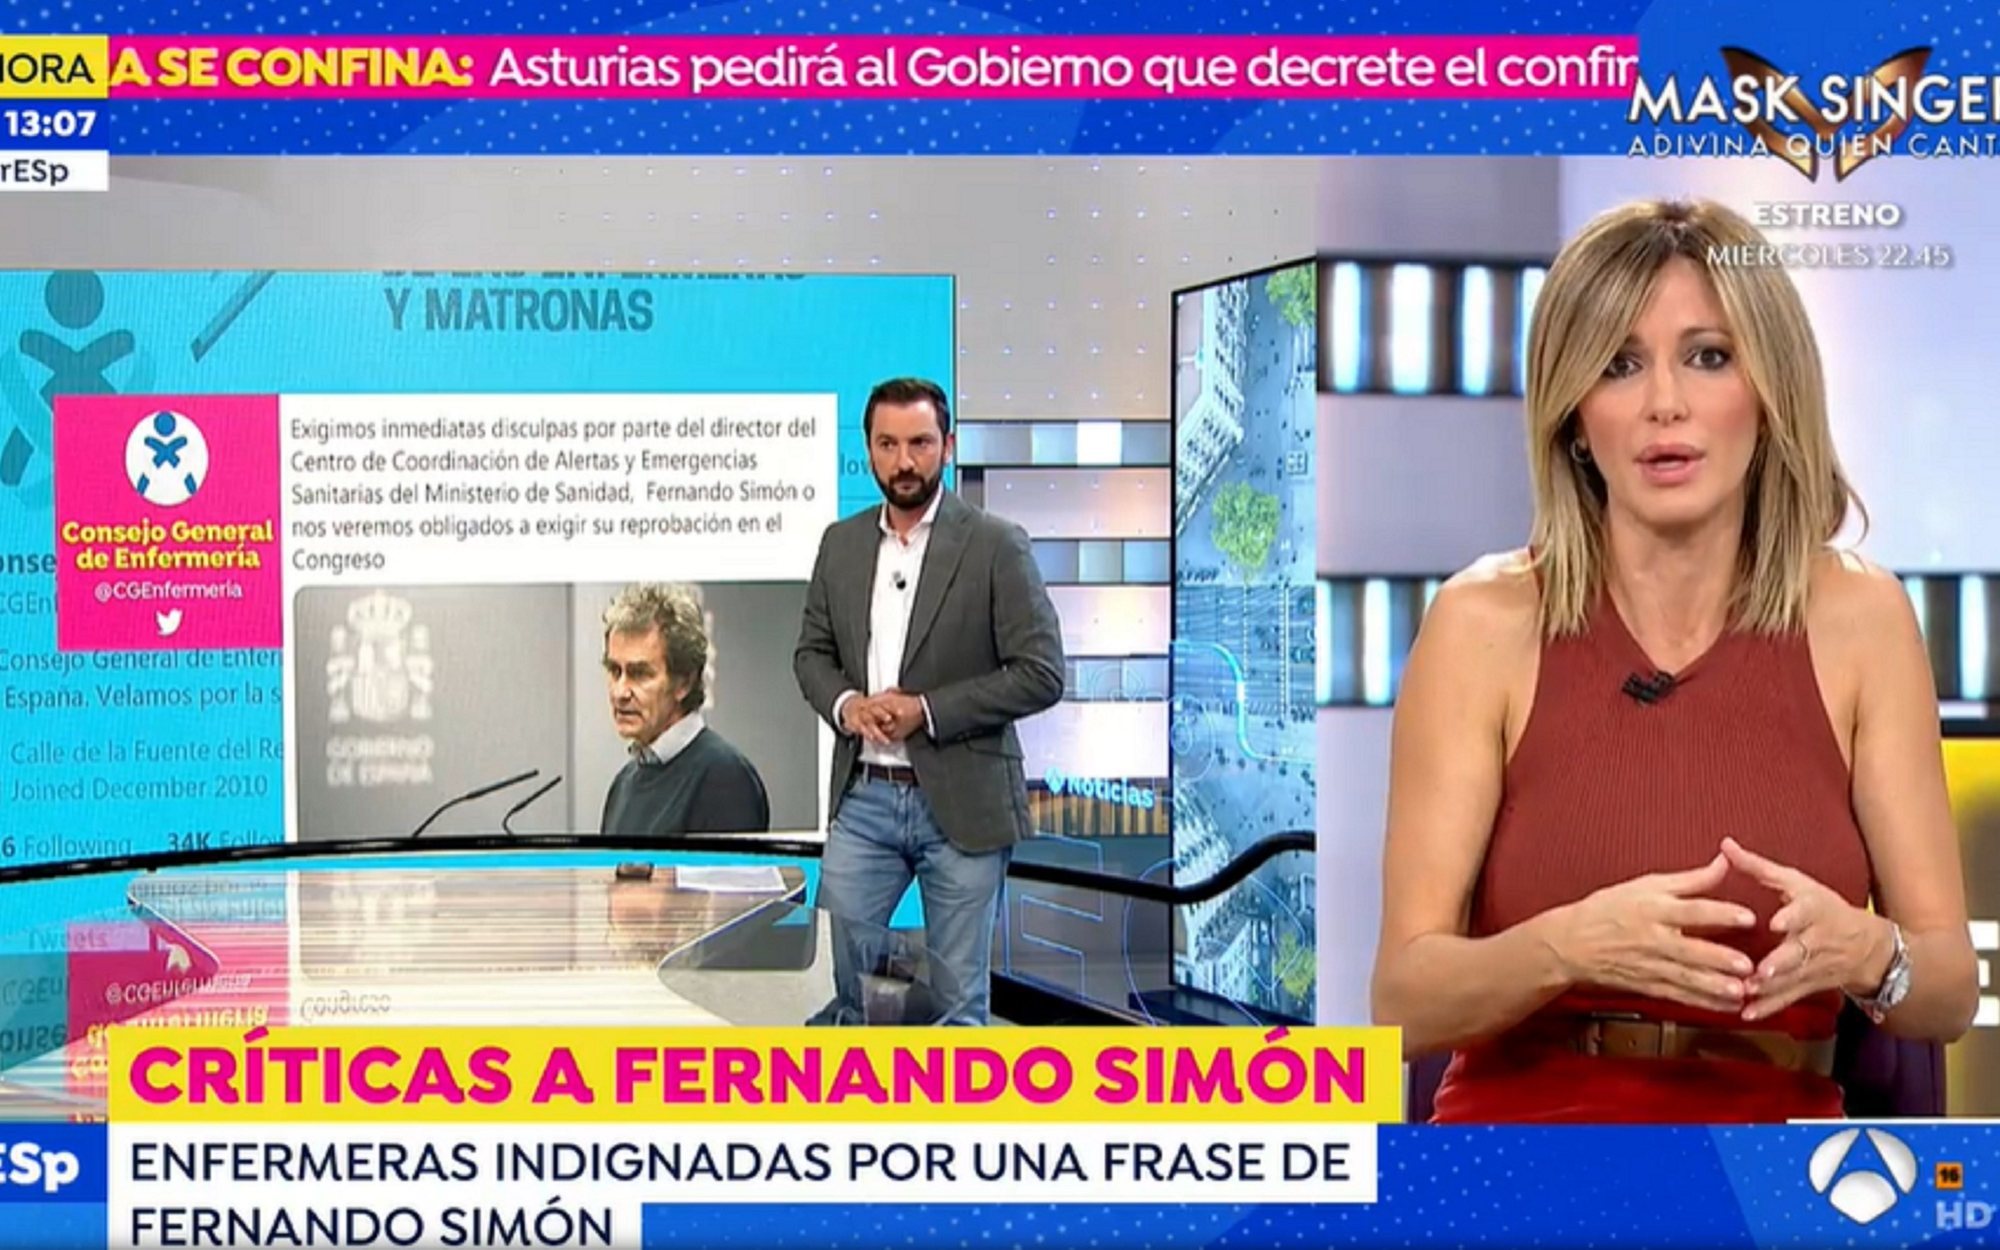 Susanna Griso arremete contra Fernando Simón: "Ha perdido toda credibilidad como autoridad sanitaria"